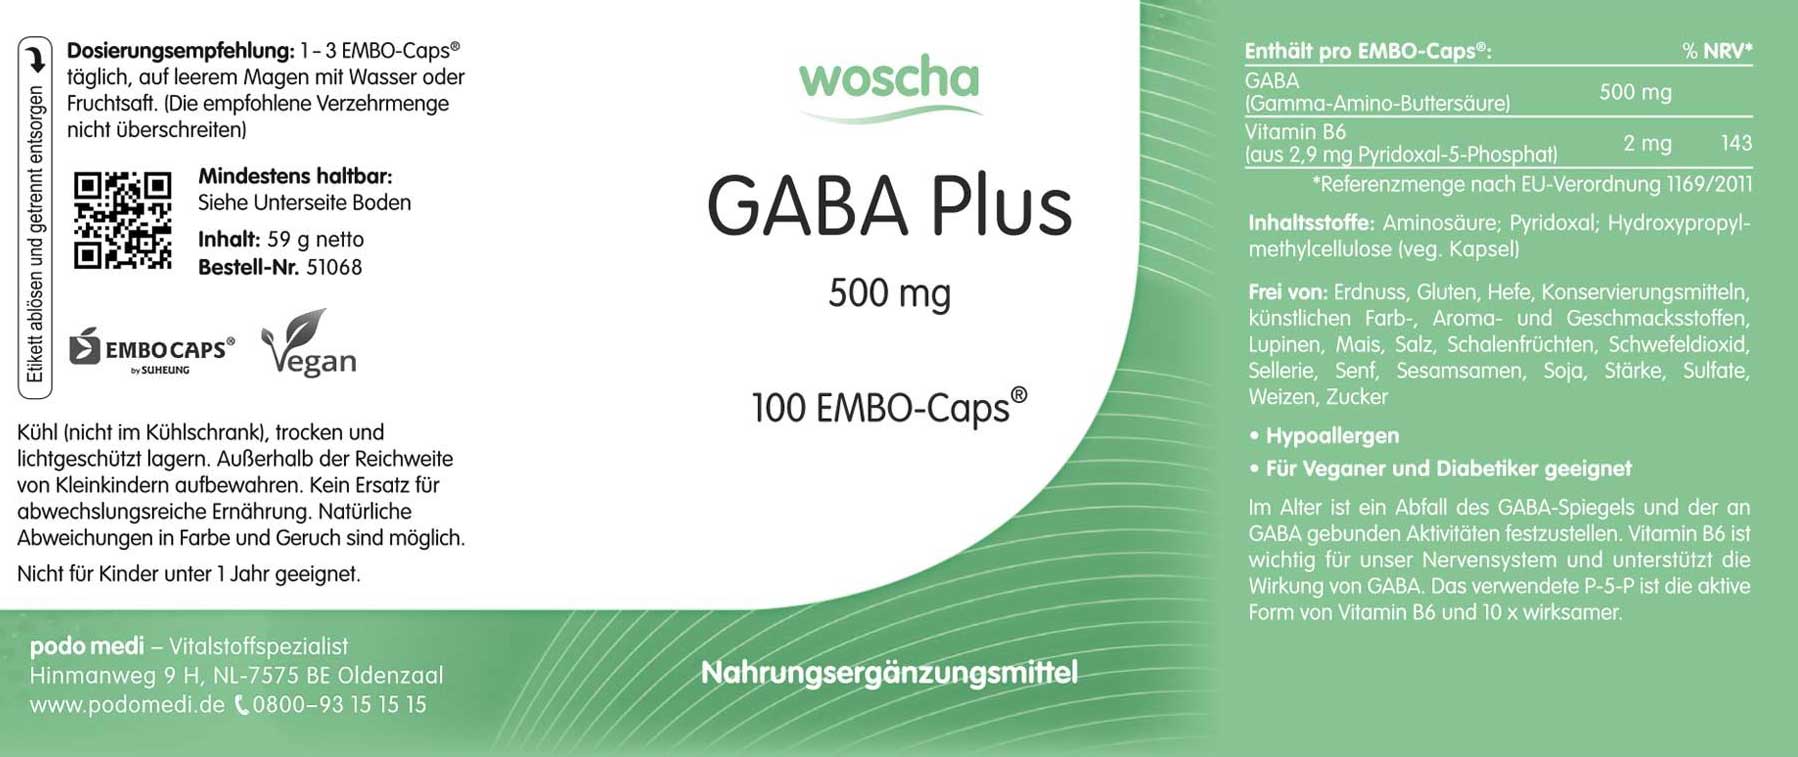 Woscha GABA Plus von podo medi beinhaltet 100 EMBO-caps Etikett